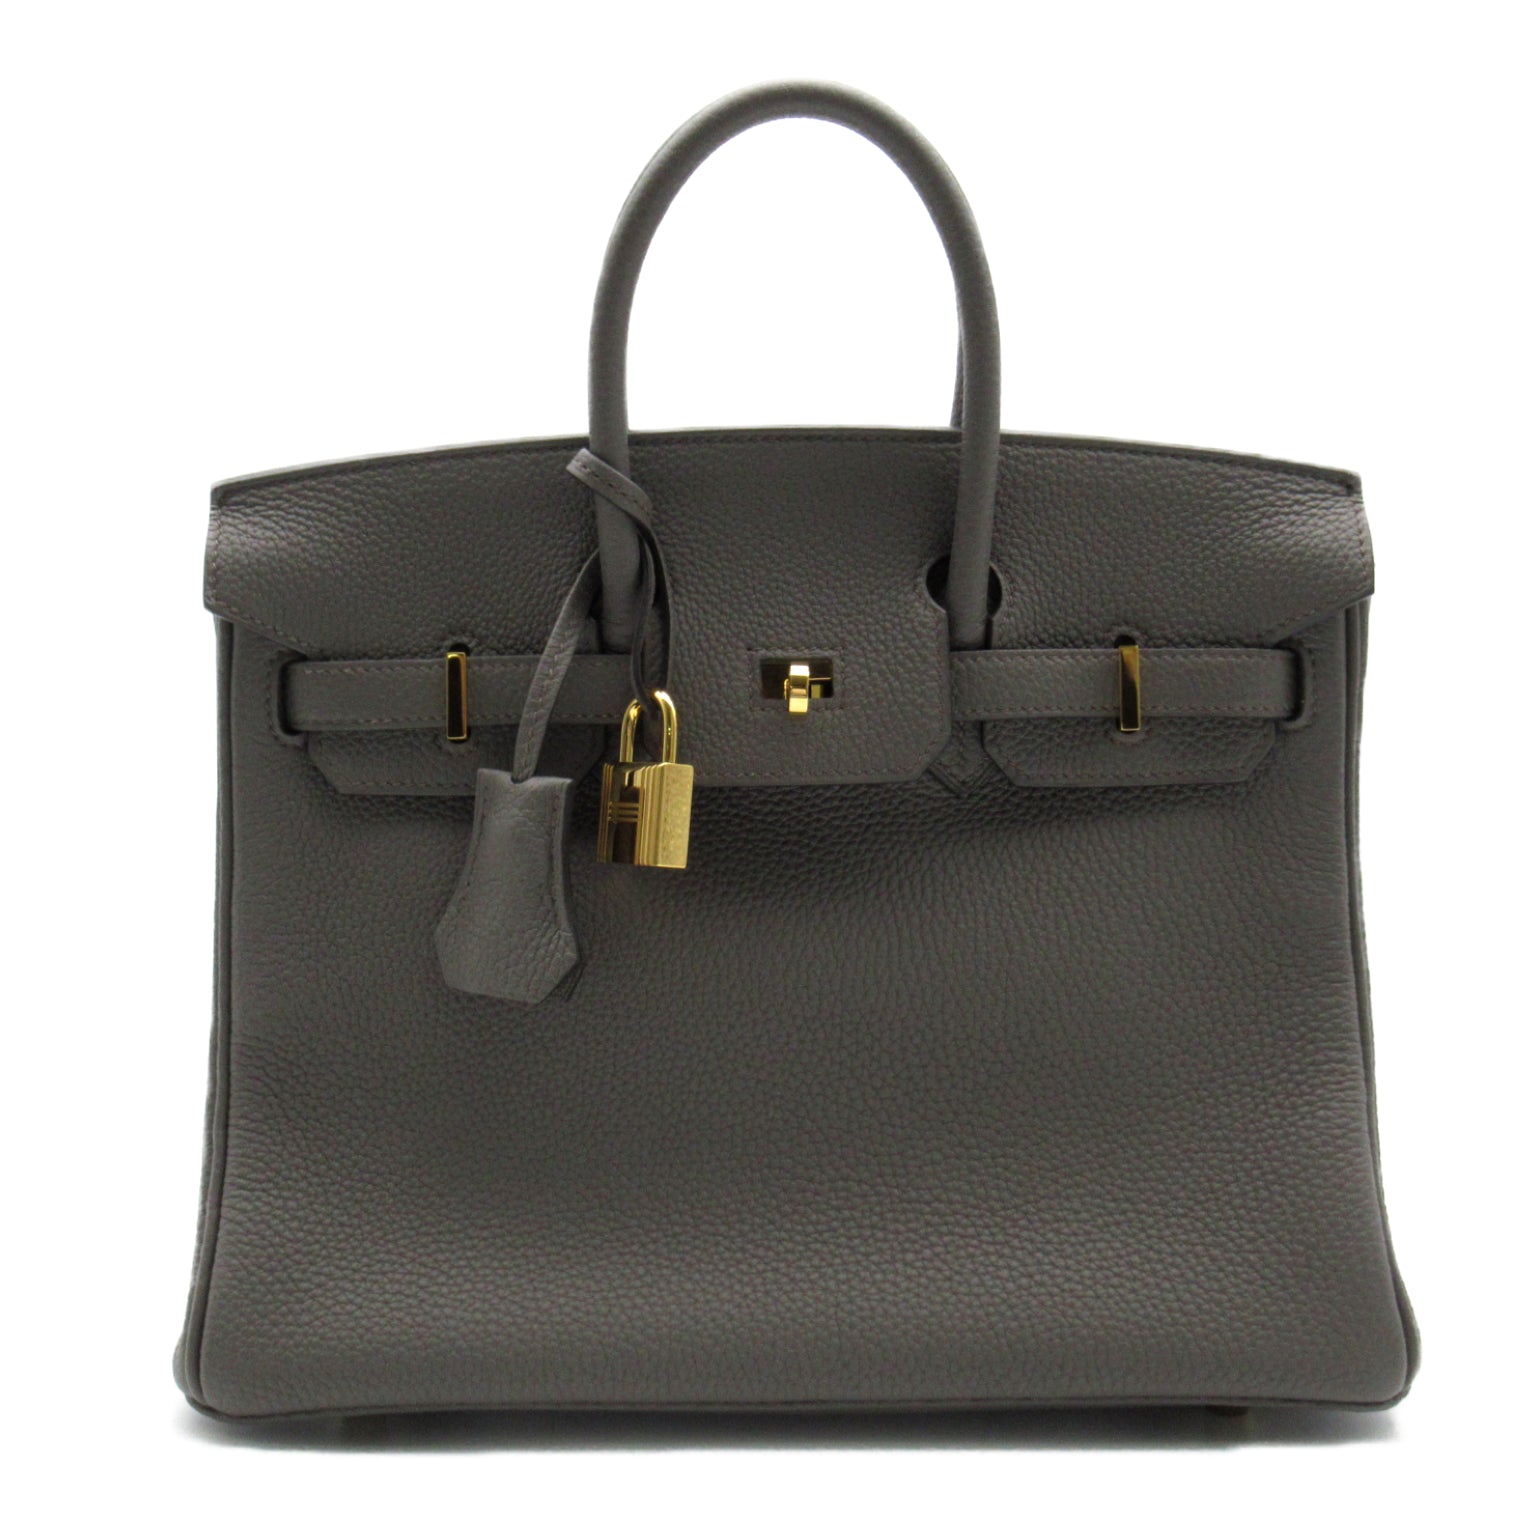 Hermes Hermes Birkin 30 Handbag Handbag Handbag TOGO LADY GREY